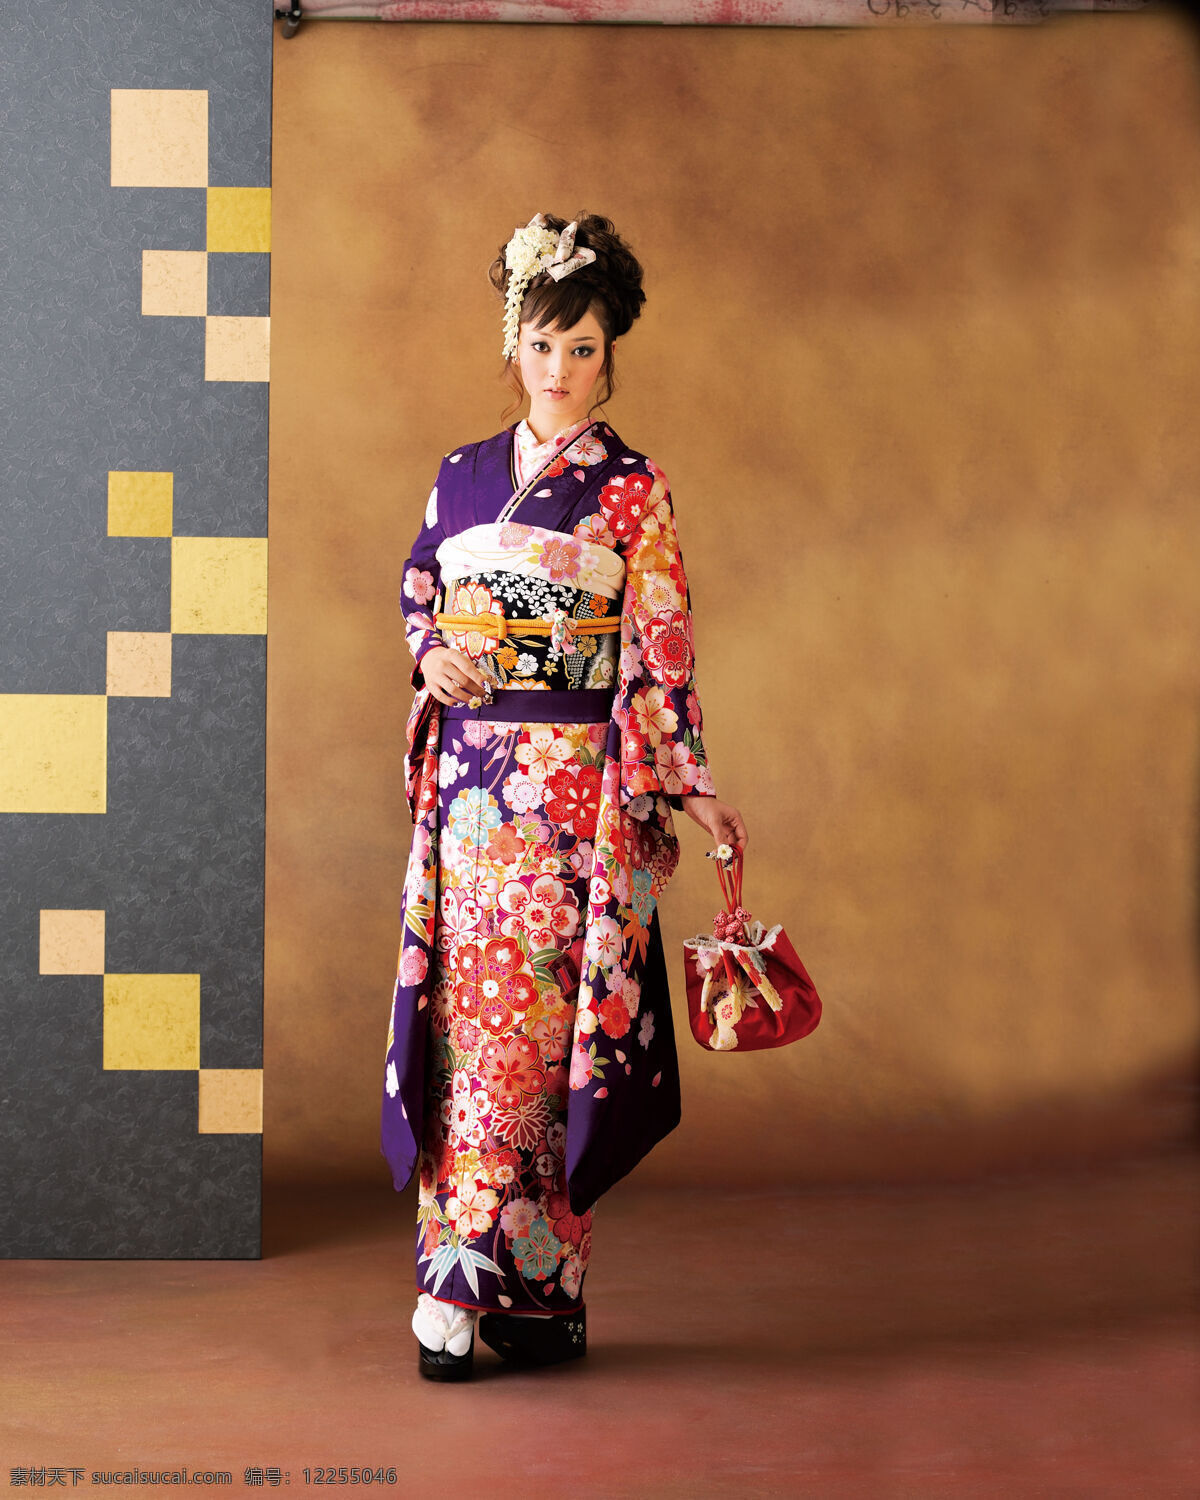 日本 和服 女性 写真 女人 香包 木屐 女性女人 人物图库